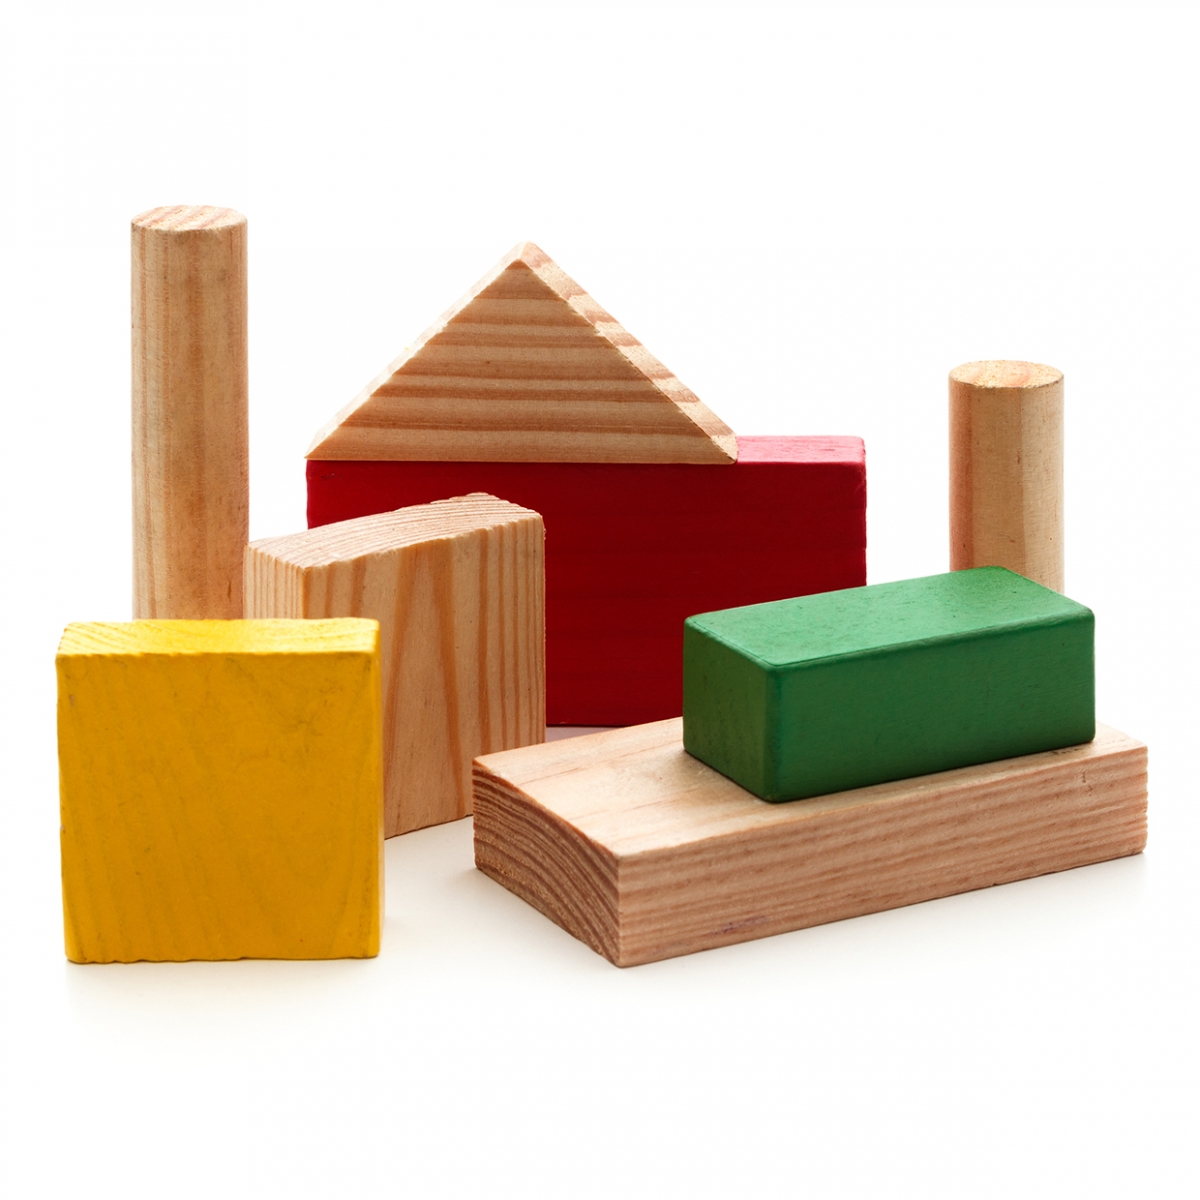 Imagen en la que se ven bloques de construcción de madera